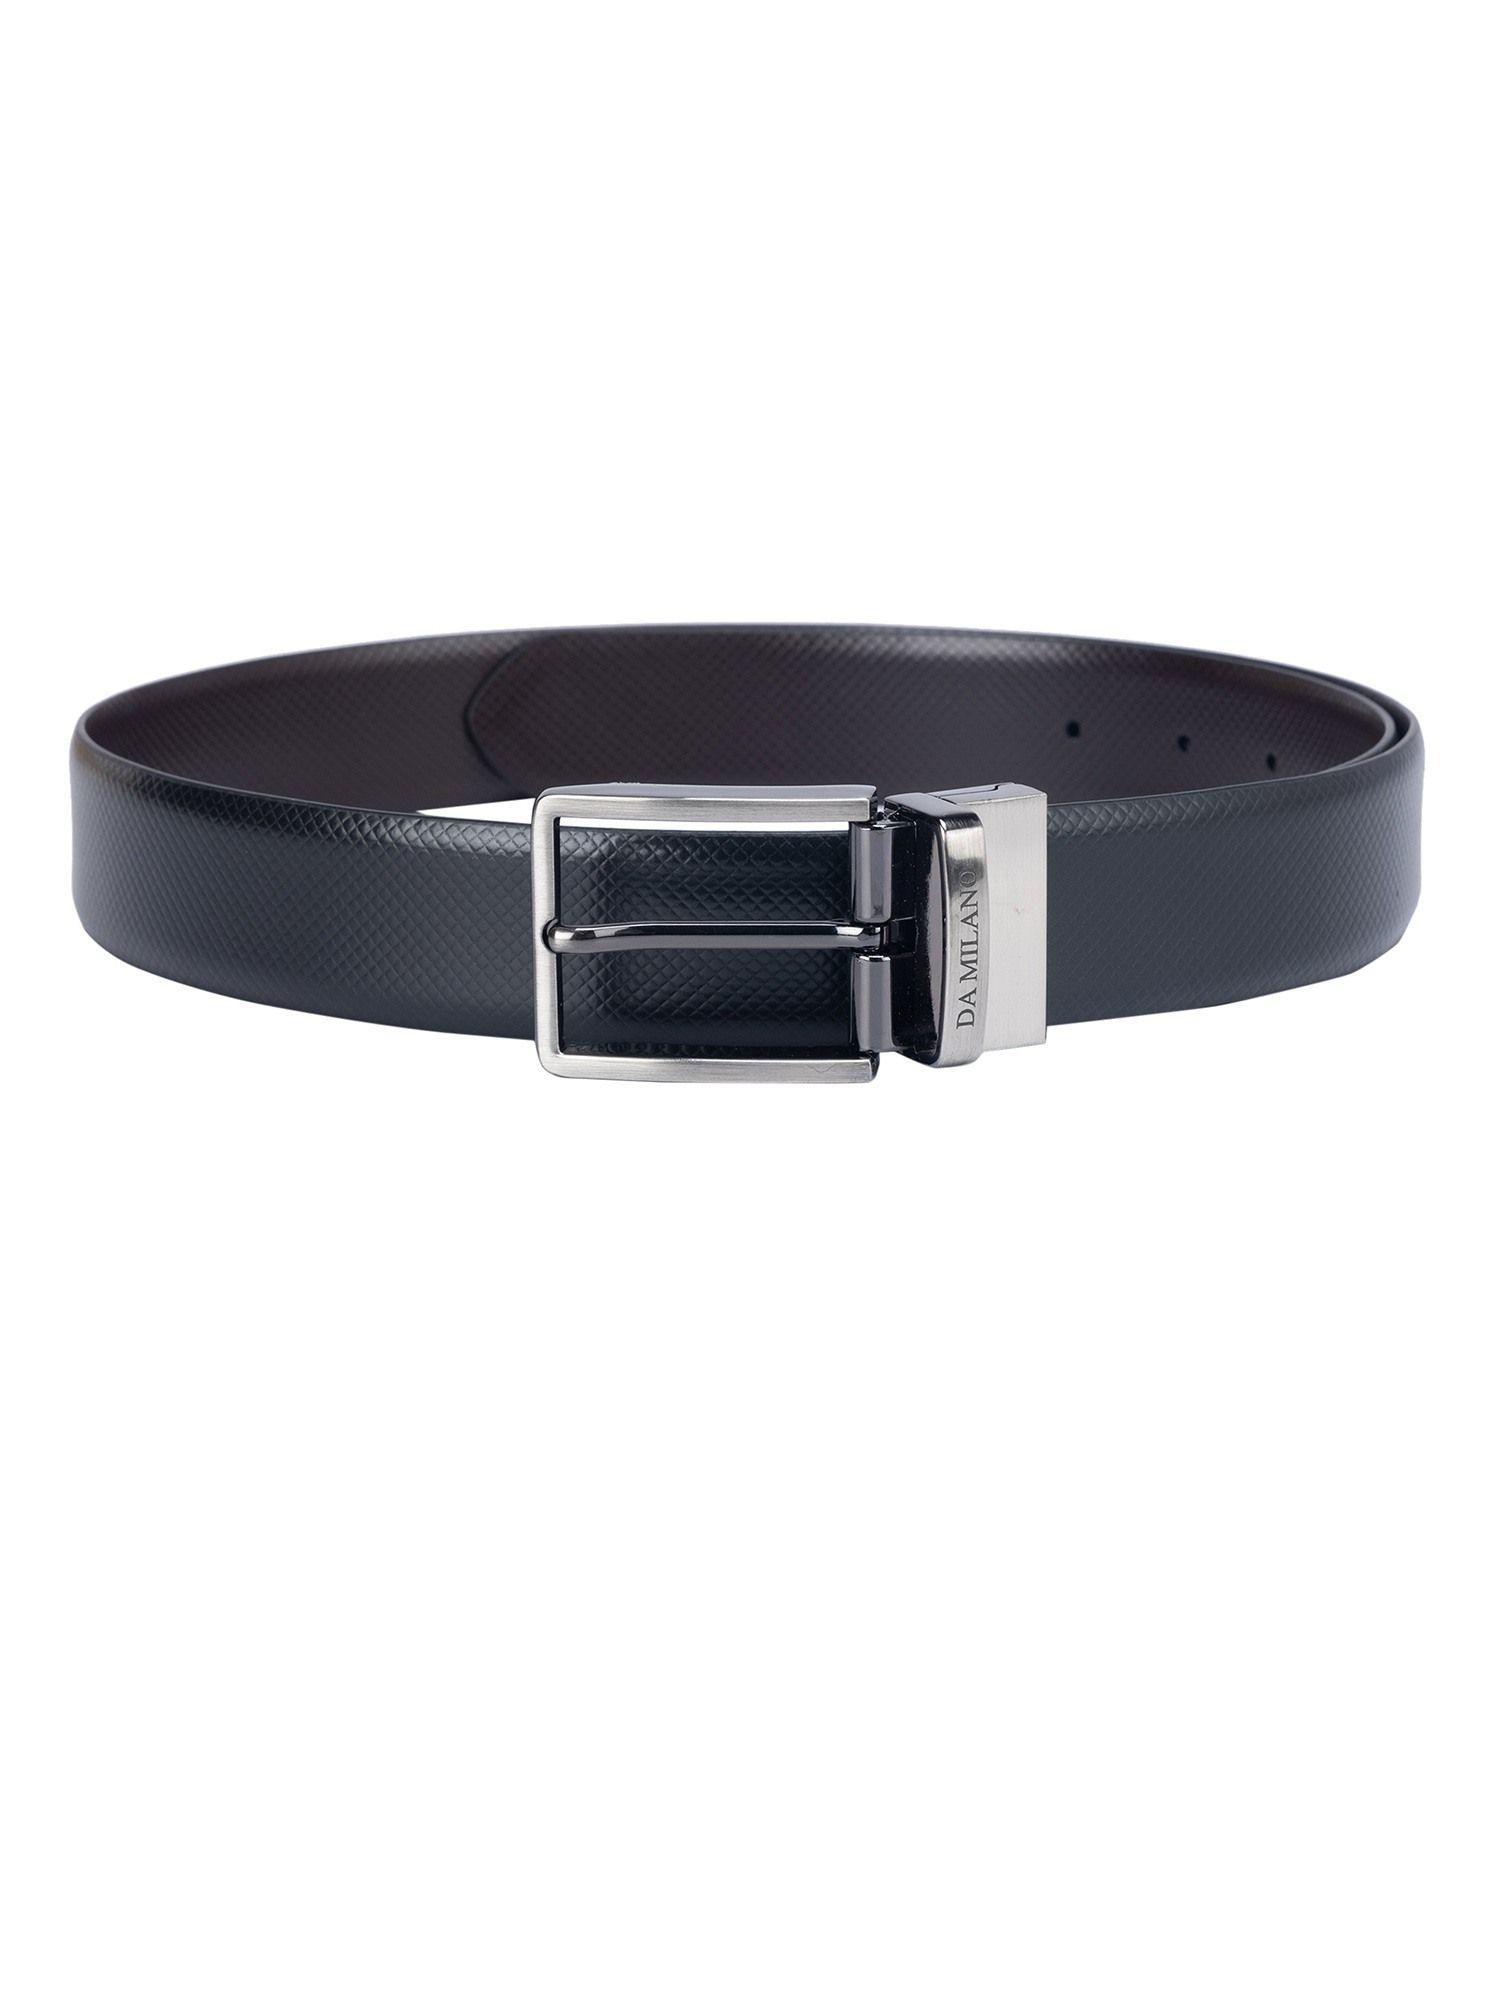 genuine leather black & brown reversible belt